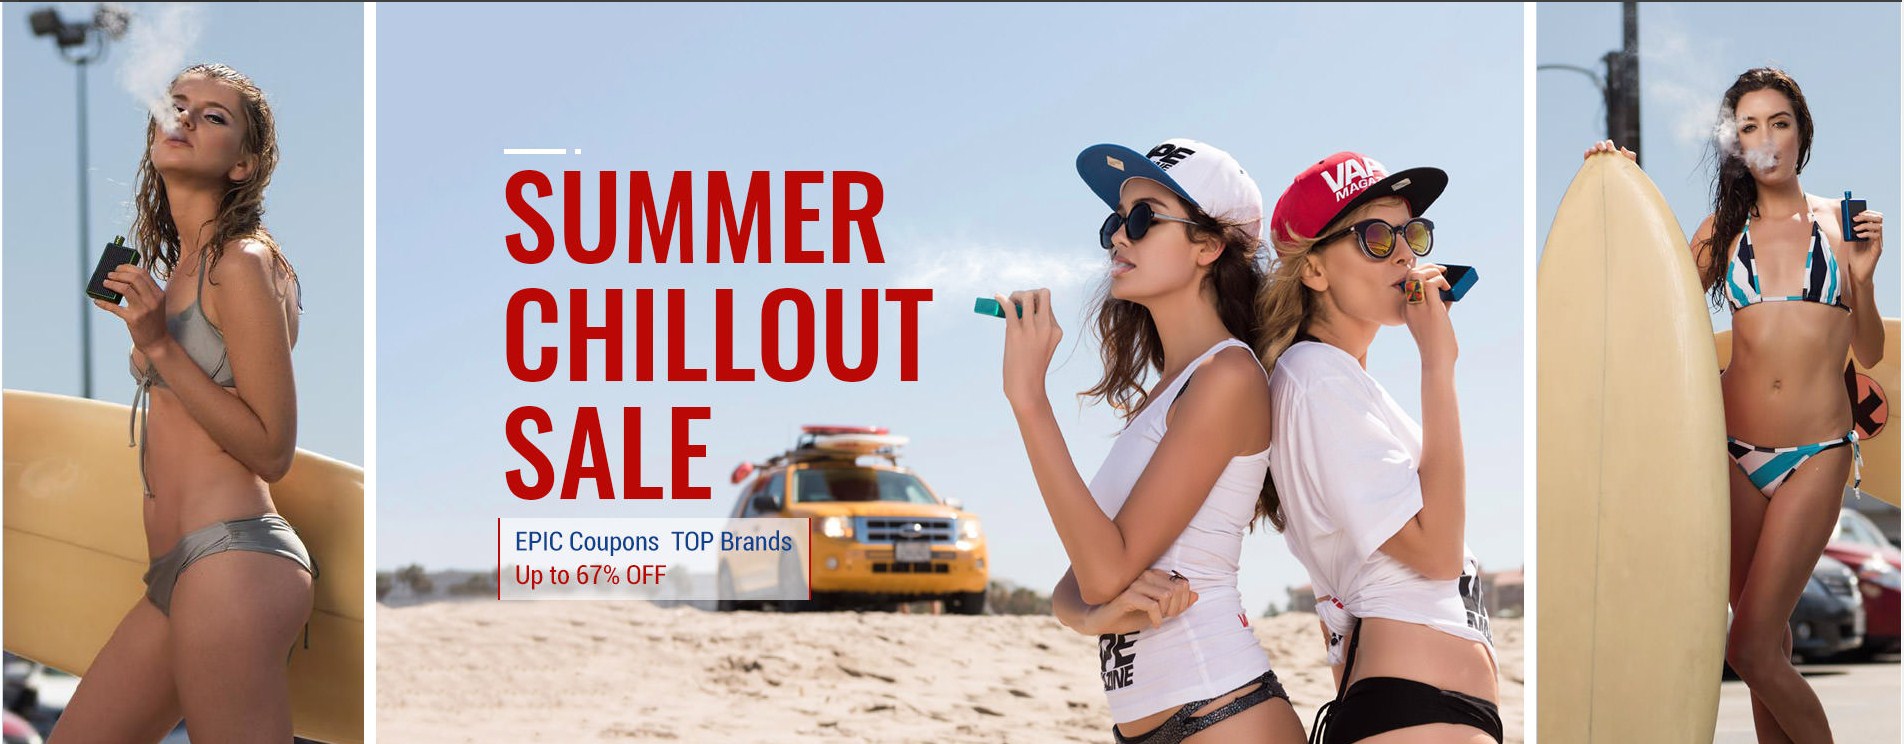 Summer chillout sale Огромная распродажа с действительно приятными ценами.